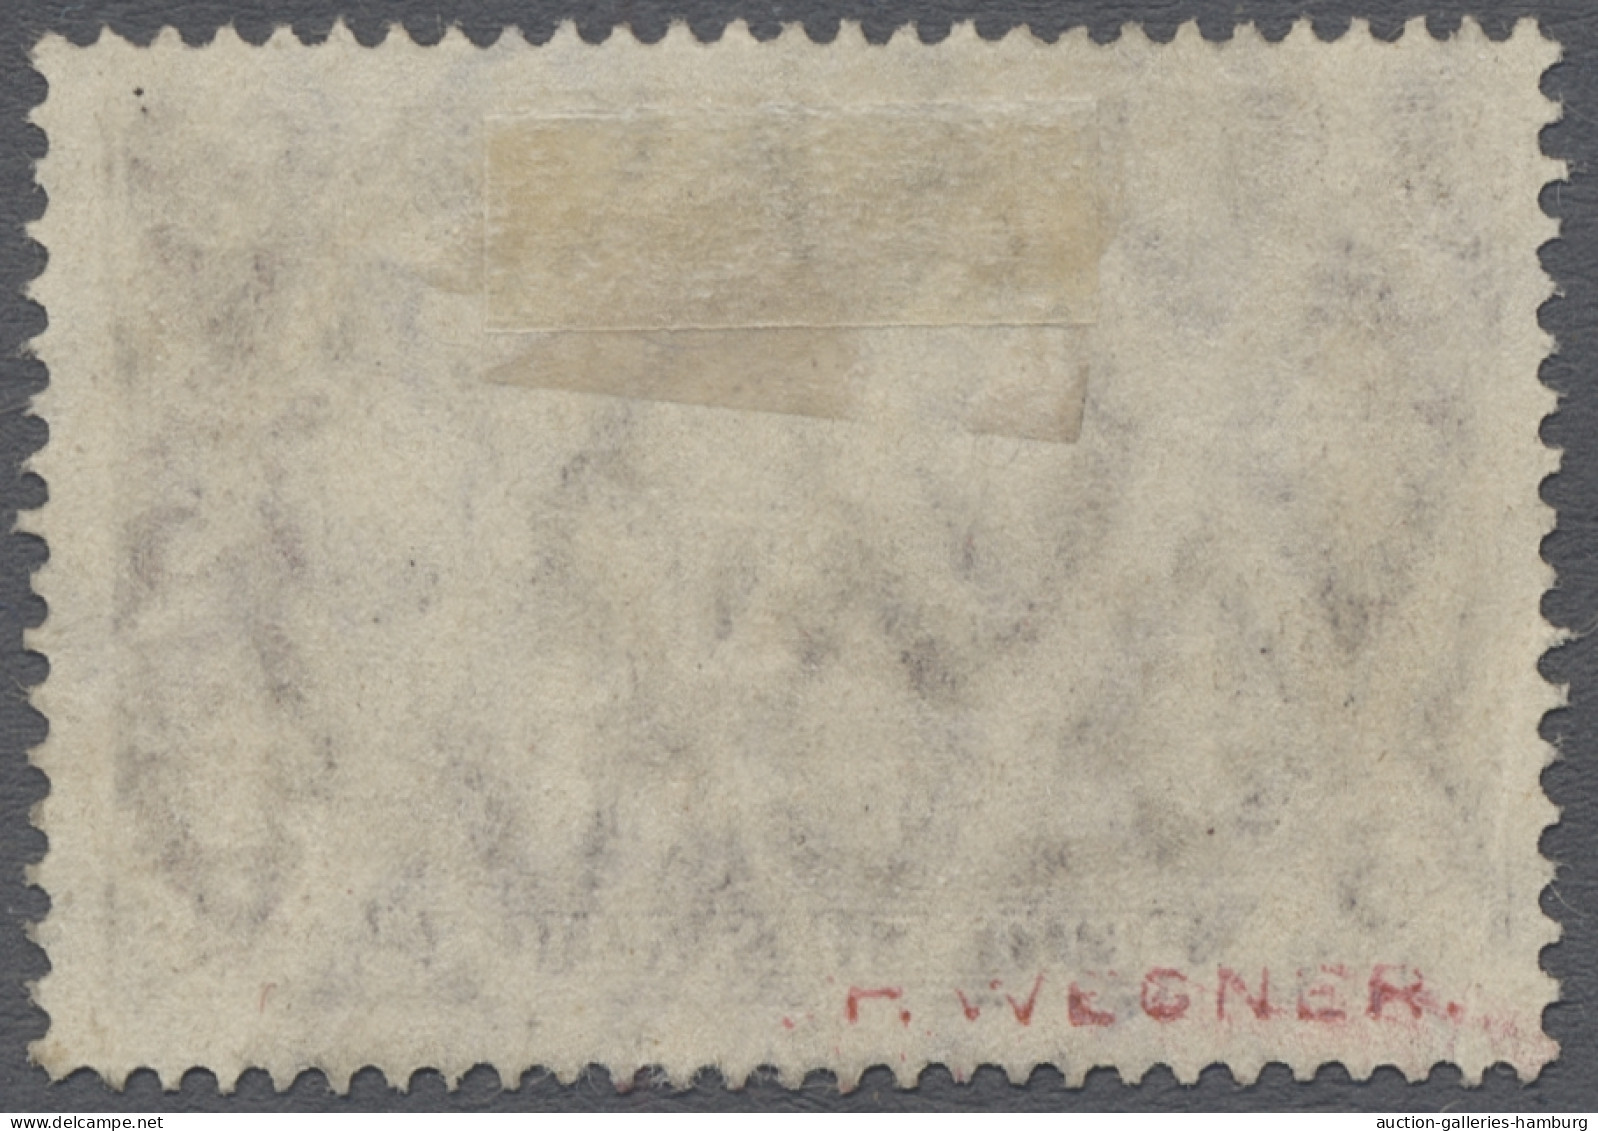 Deutsche Post In Marokko: 1911, DEUTSCHES REICH Mit Wz., Landesname "Marokko", D - Deutsche Post In Marokko